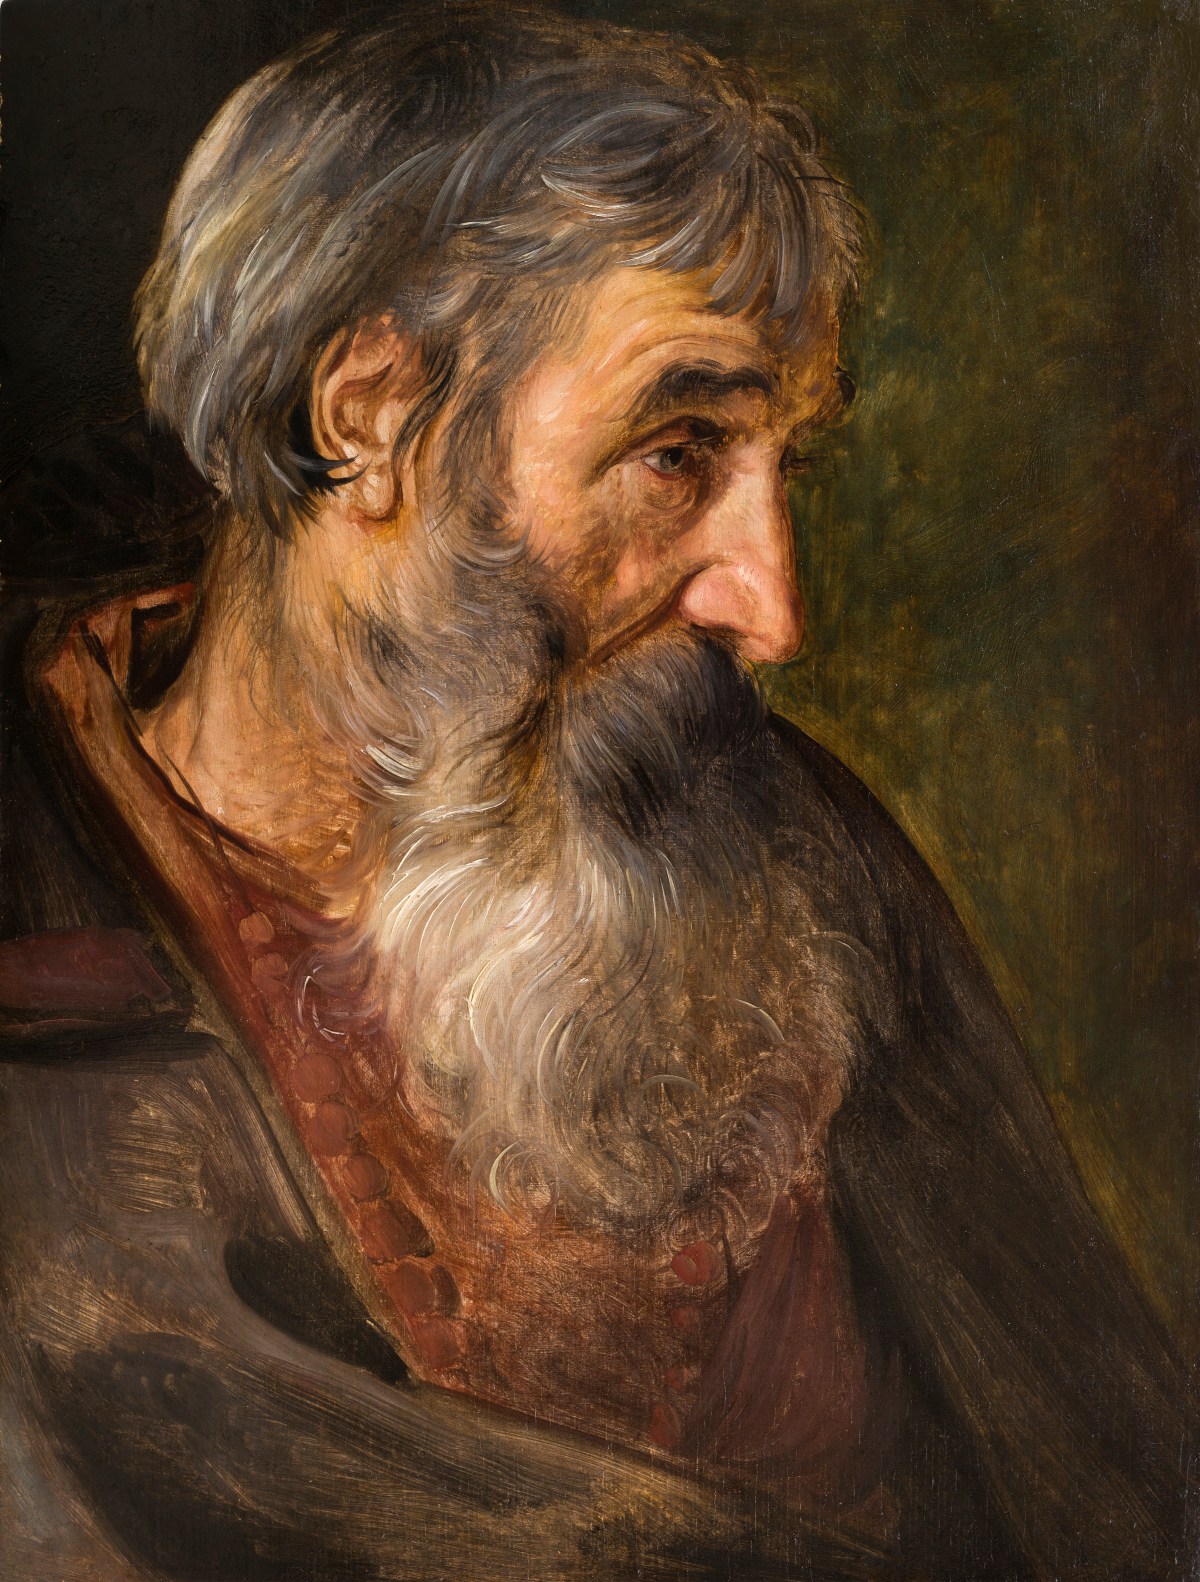 Maerten de Vos (1532 – 1603) Studio di testa di uomo con la barba